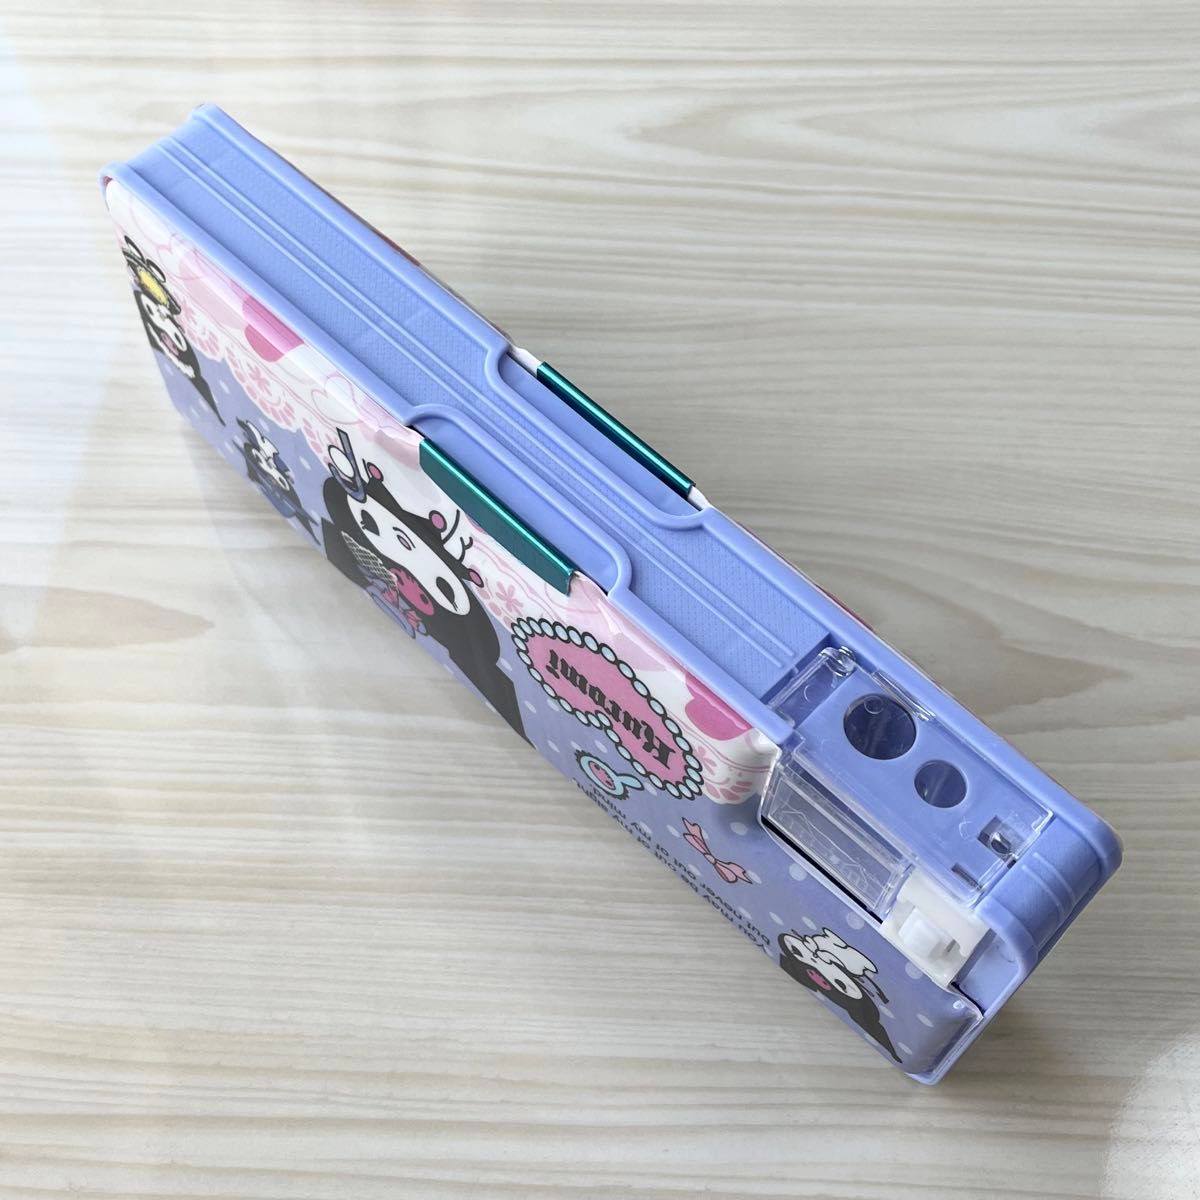 クロミちゃん 鉛筆削り付き筆箱 ペンケース サンリオ キャラクター 可愛いプレゼント